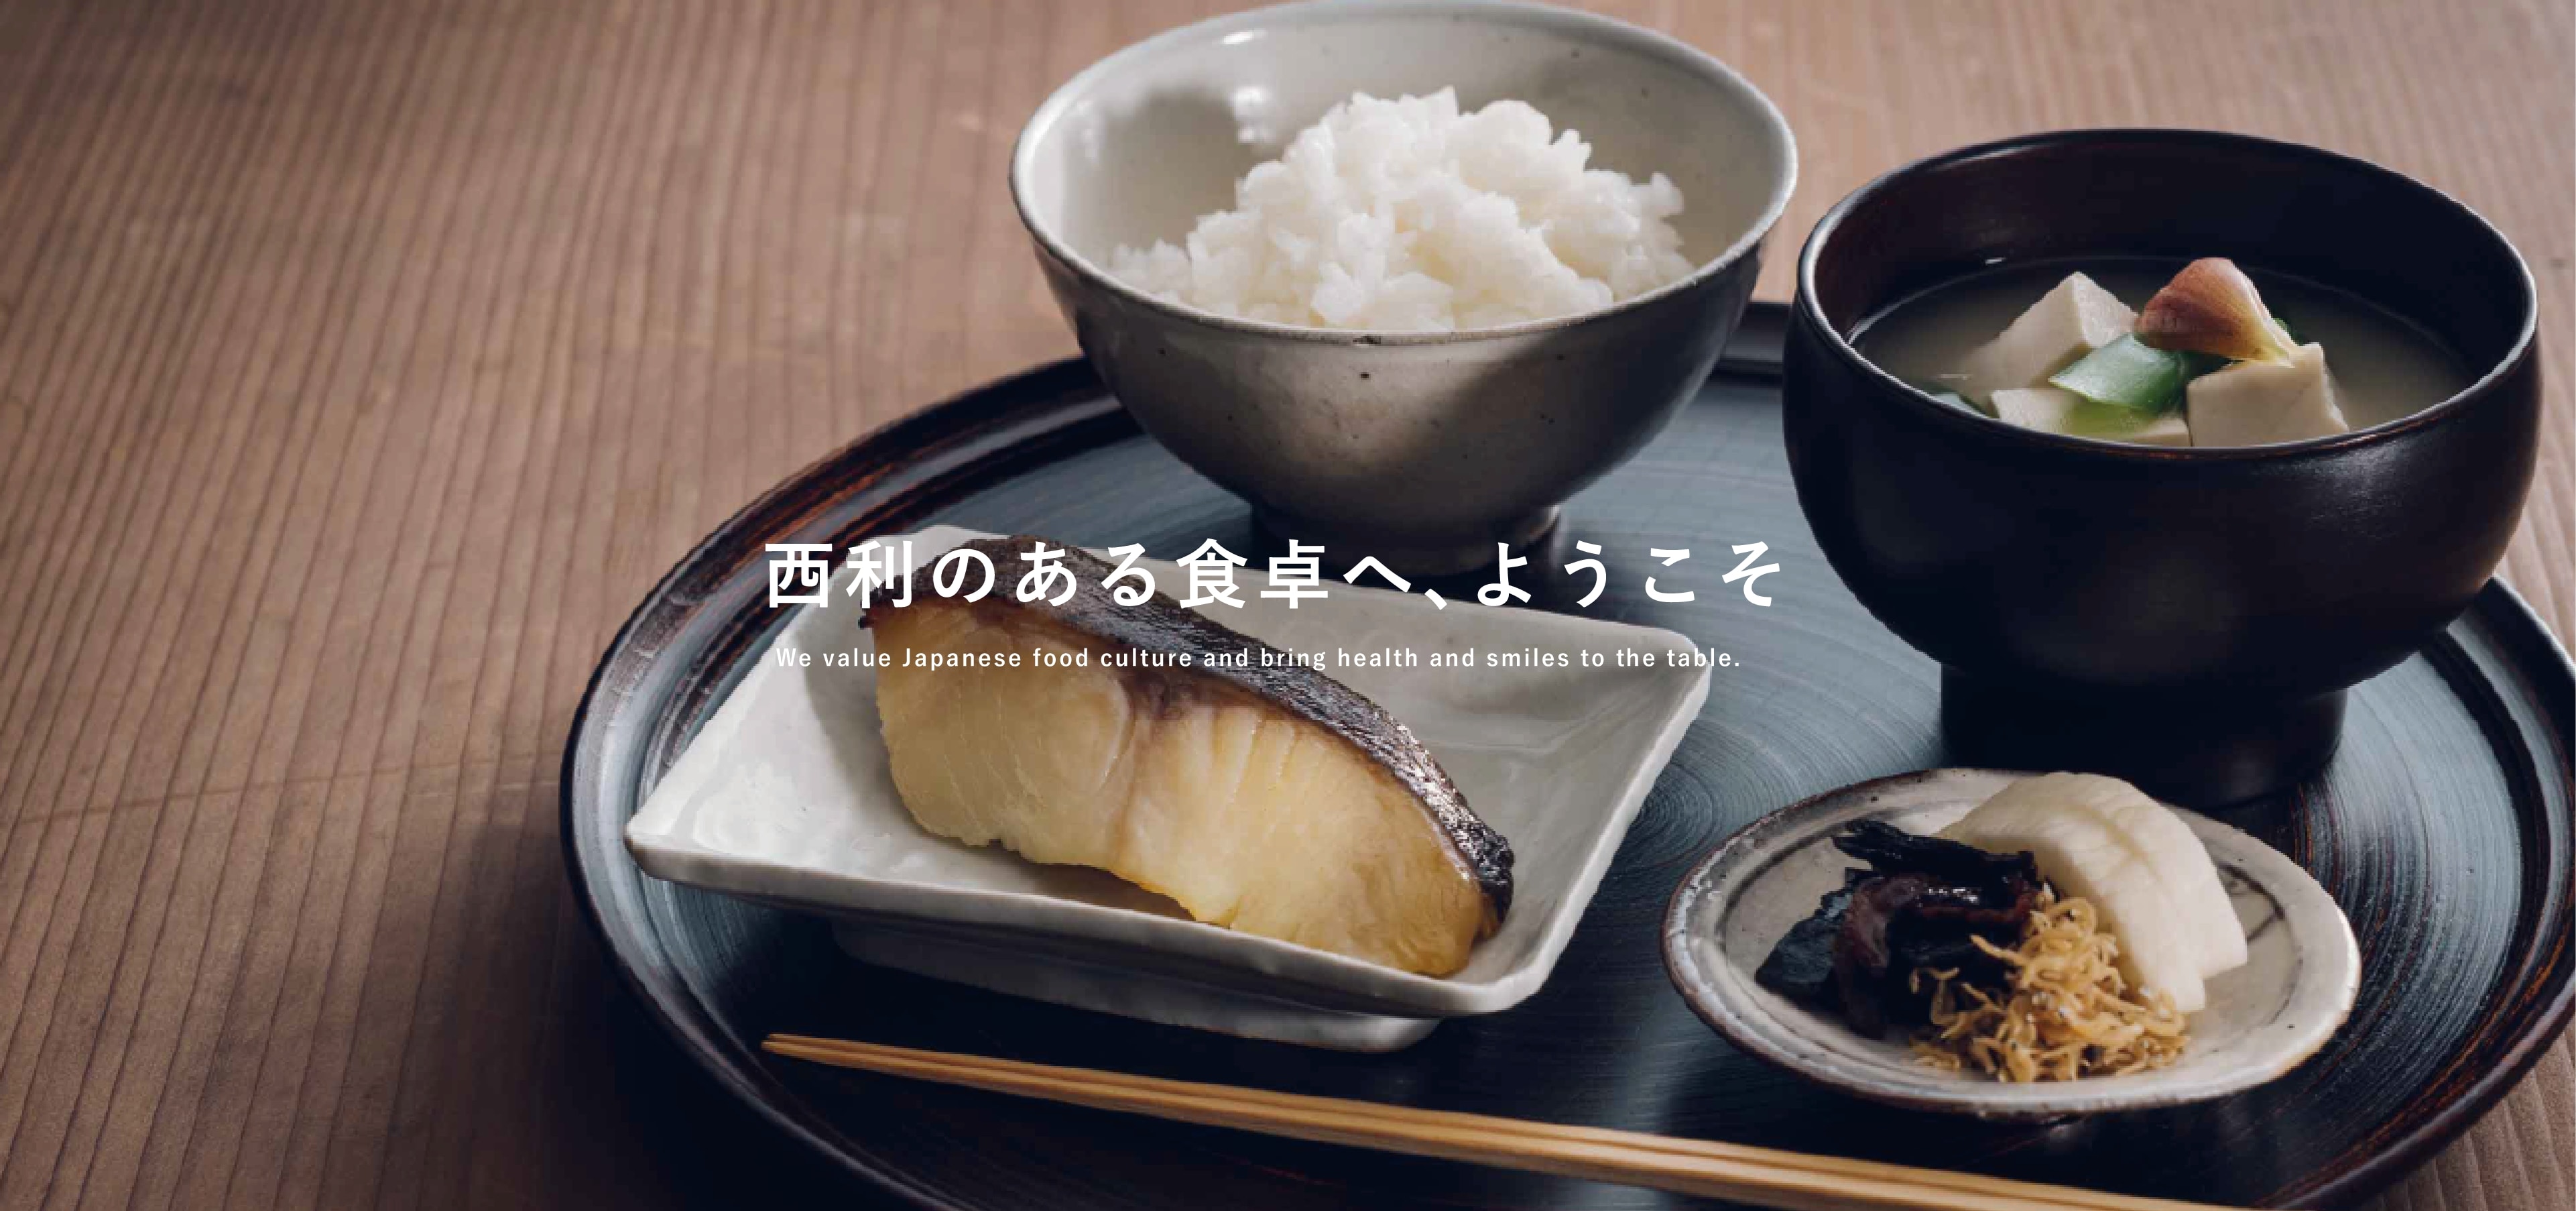 西利のある食卓へ、ようこそ We value Japanese food culture and bring health and smiles to the table.